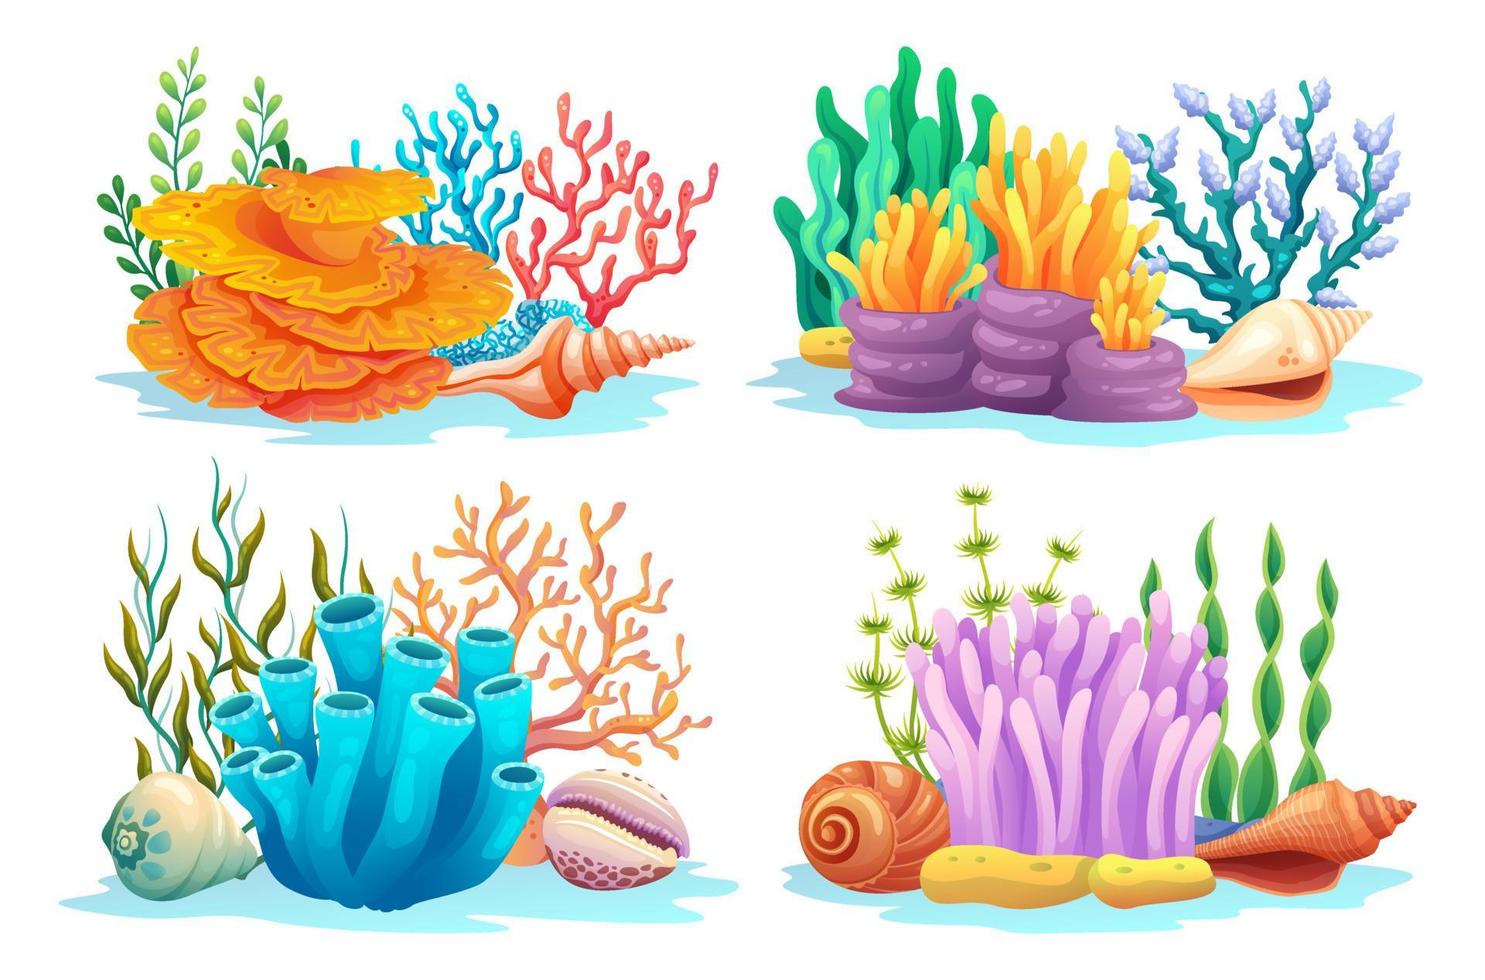 conjunto de arrecifes de coral, algas, algas y conchas marinas en varios tipos de ilustración de dibujos animados vector